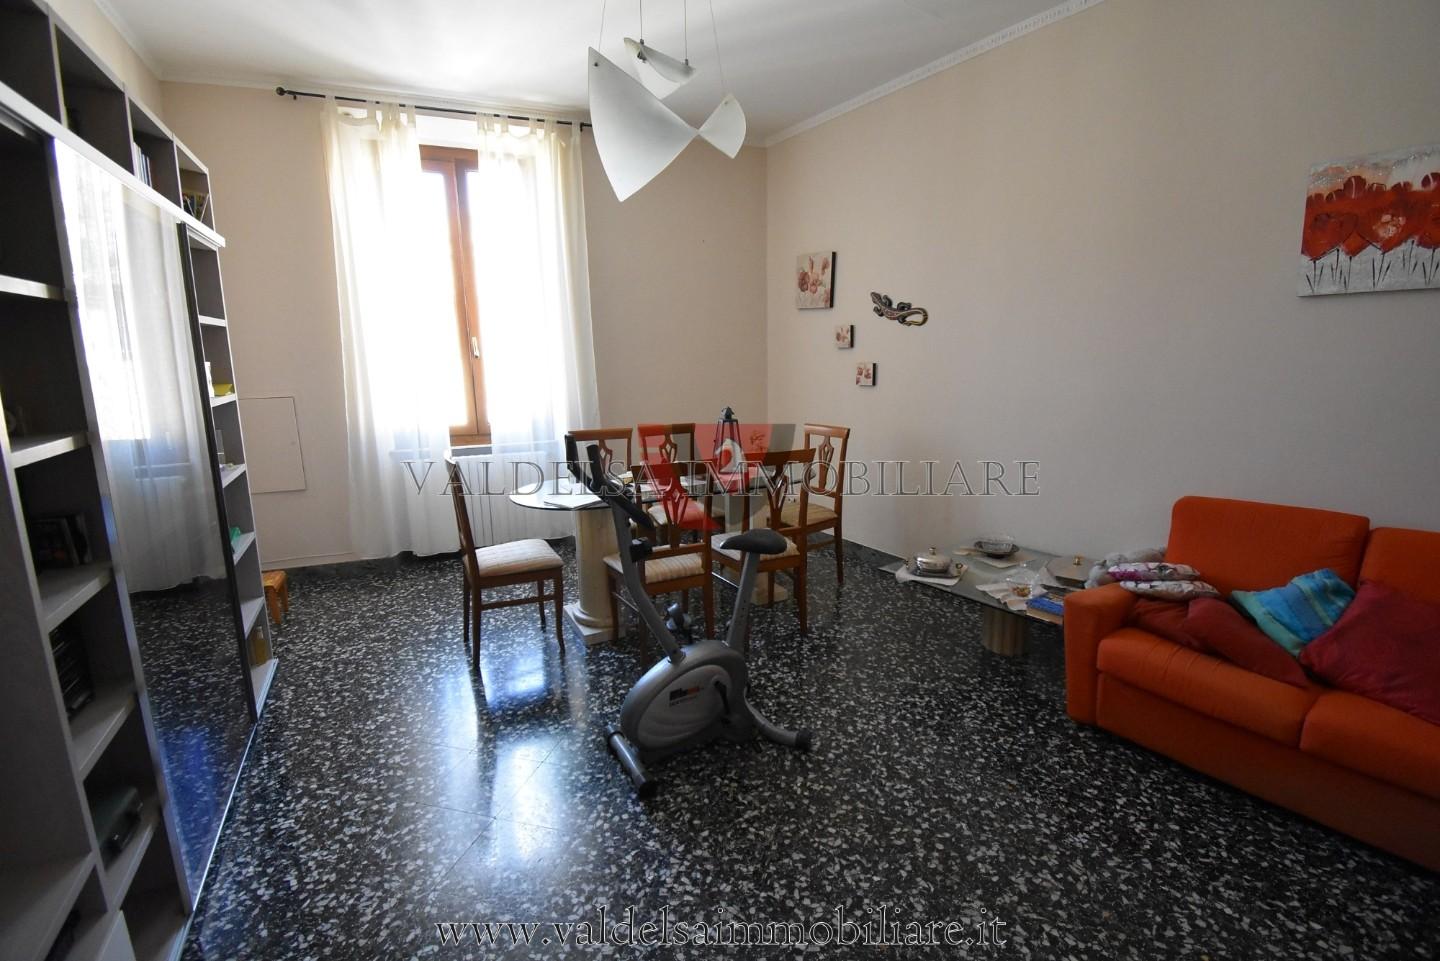 Appartamento in vendita a Colle di Val d'Elsa, 4 locali, prezzo € 140.000 | PortaleAgenzieImmobiliari.it